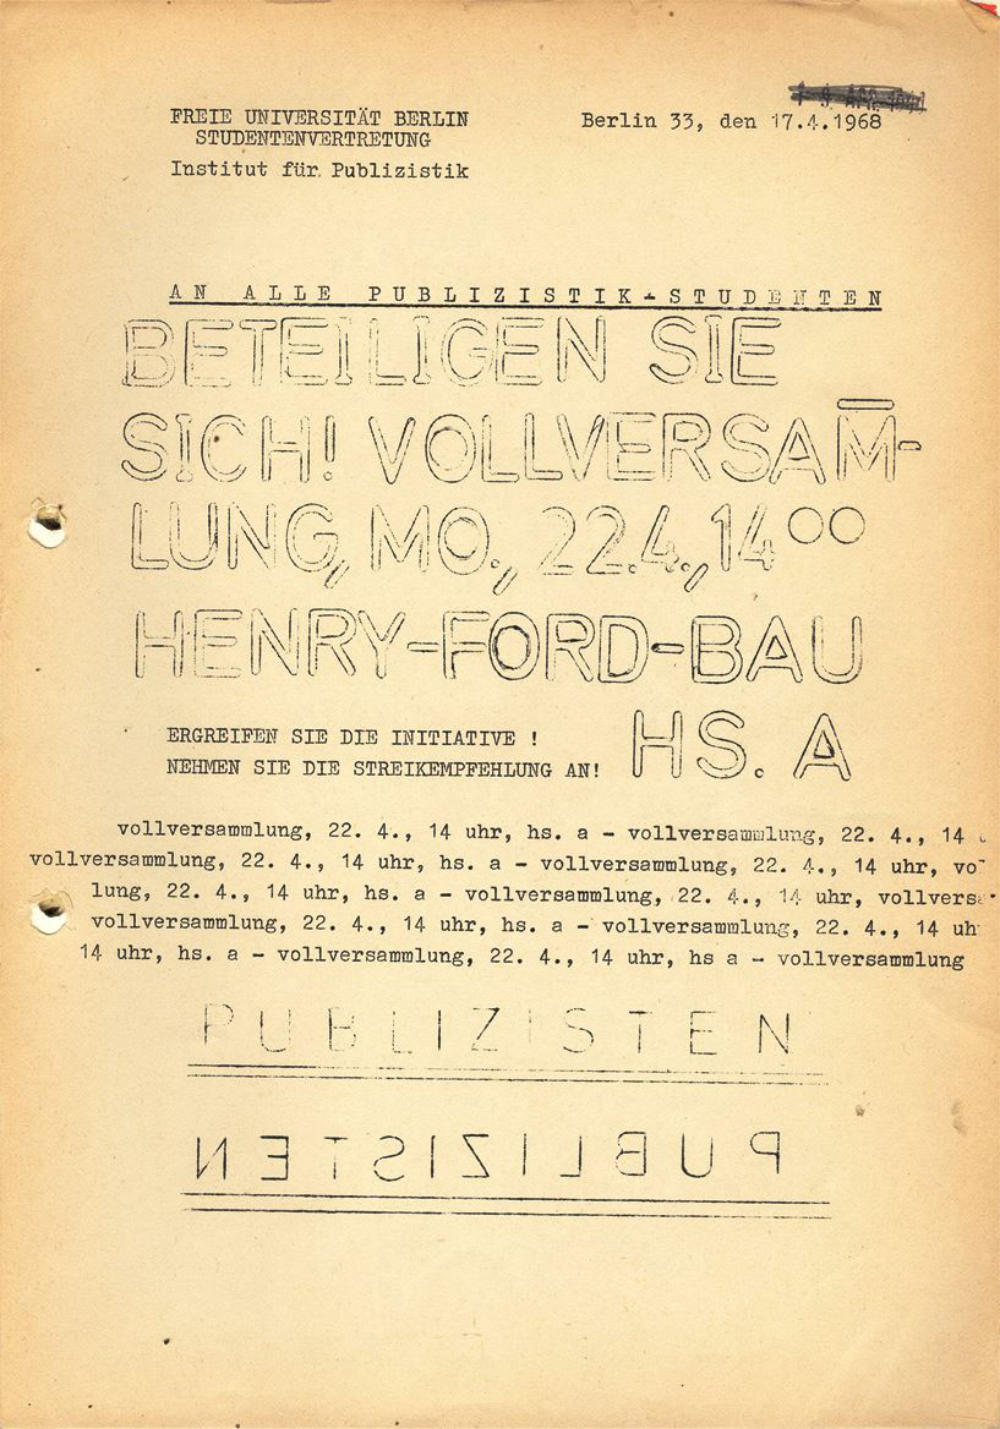 Flyer zur Vollversammlung der Publizistik-Studierenden am 22.04.1968